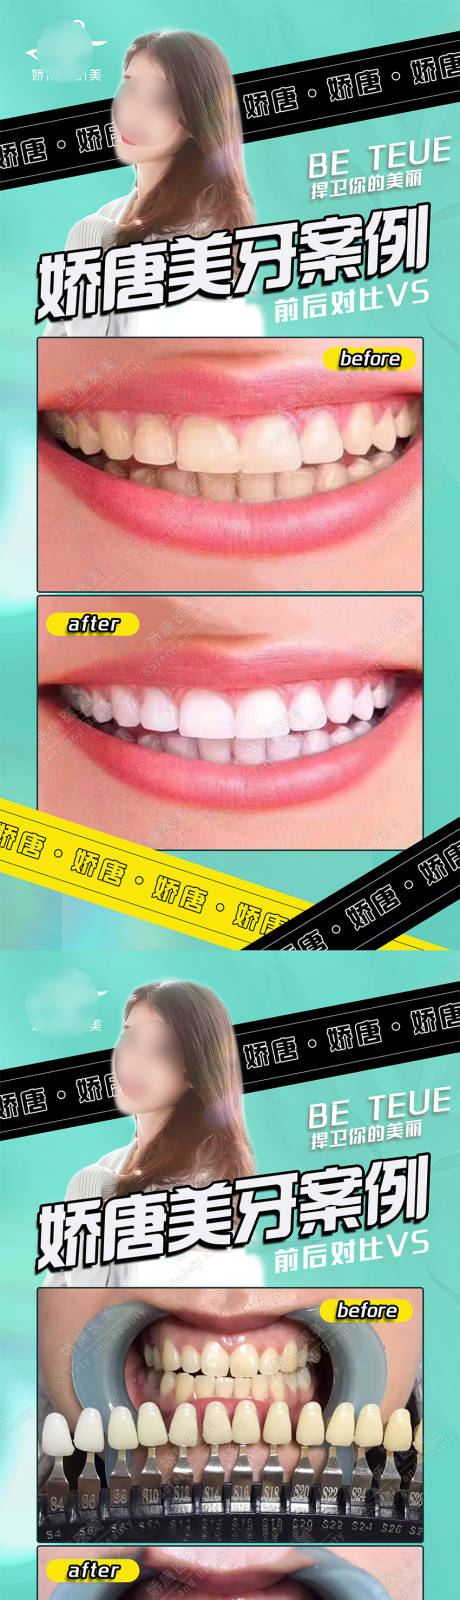 医美牙齿美容案例对比